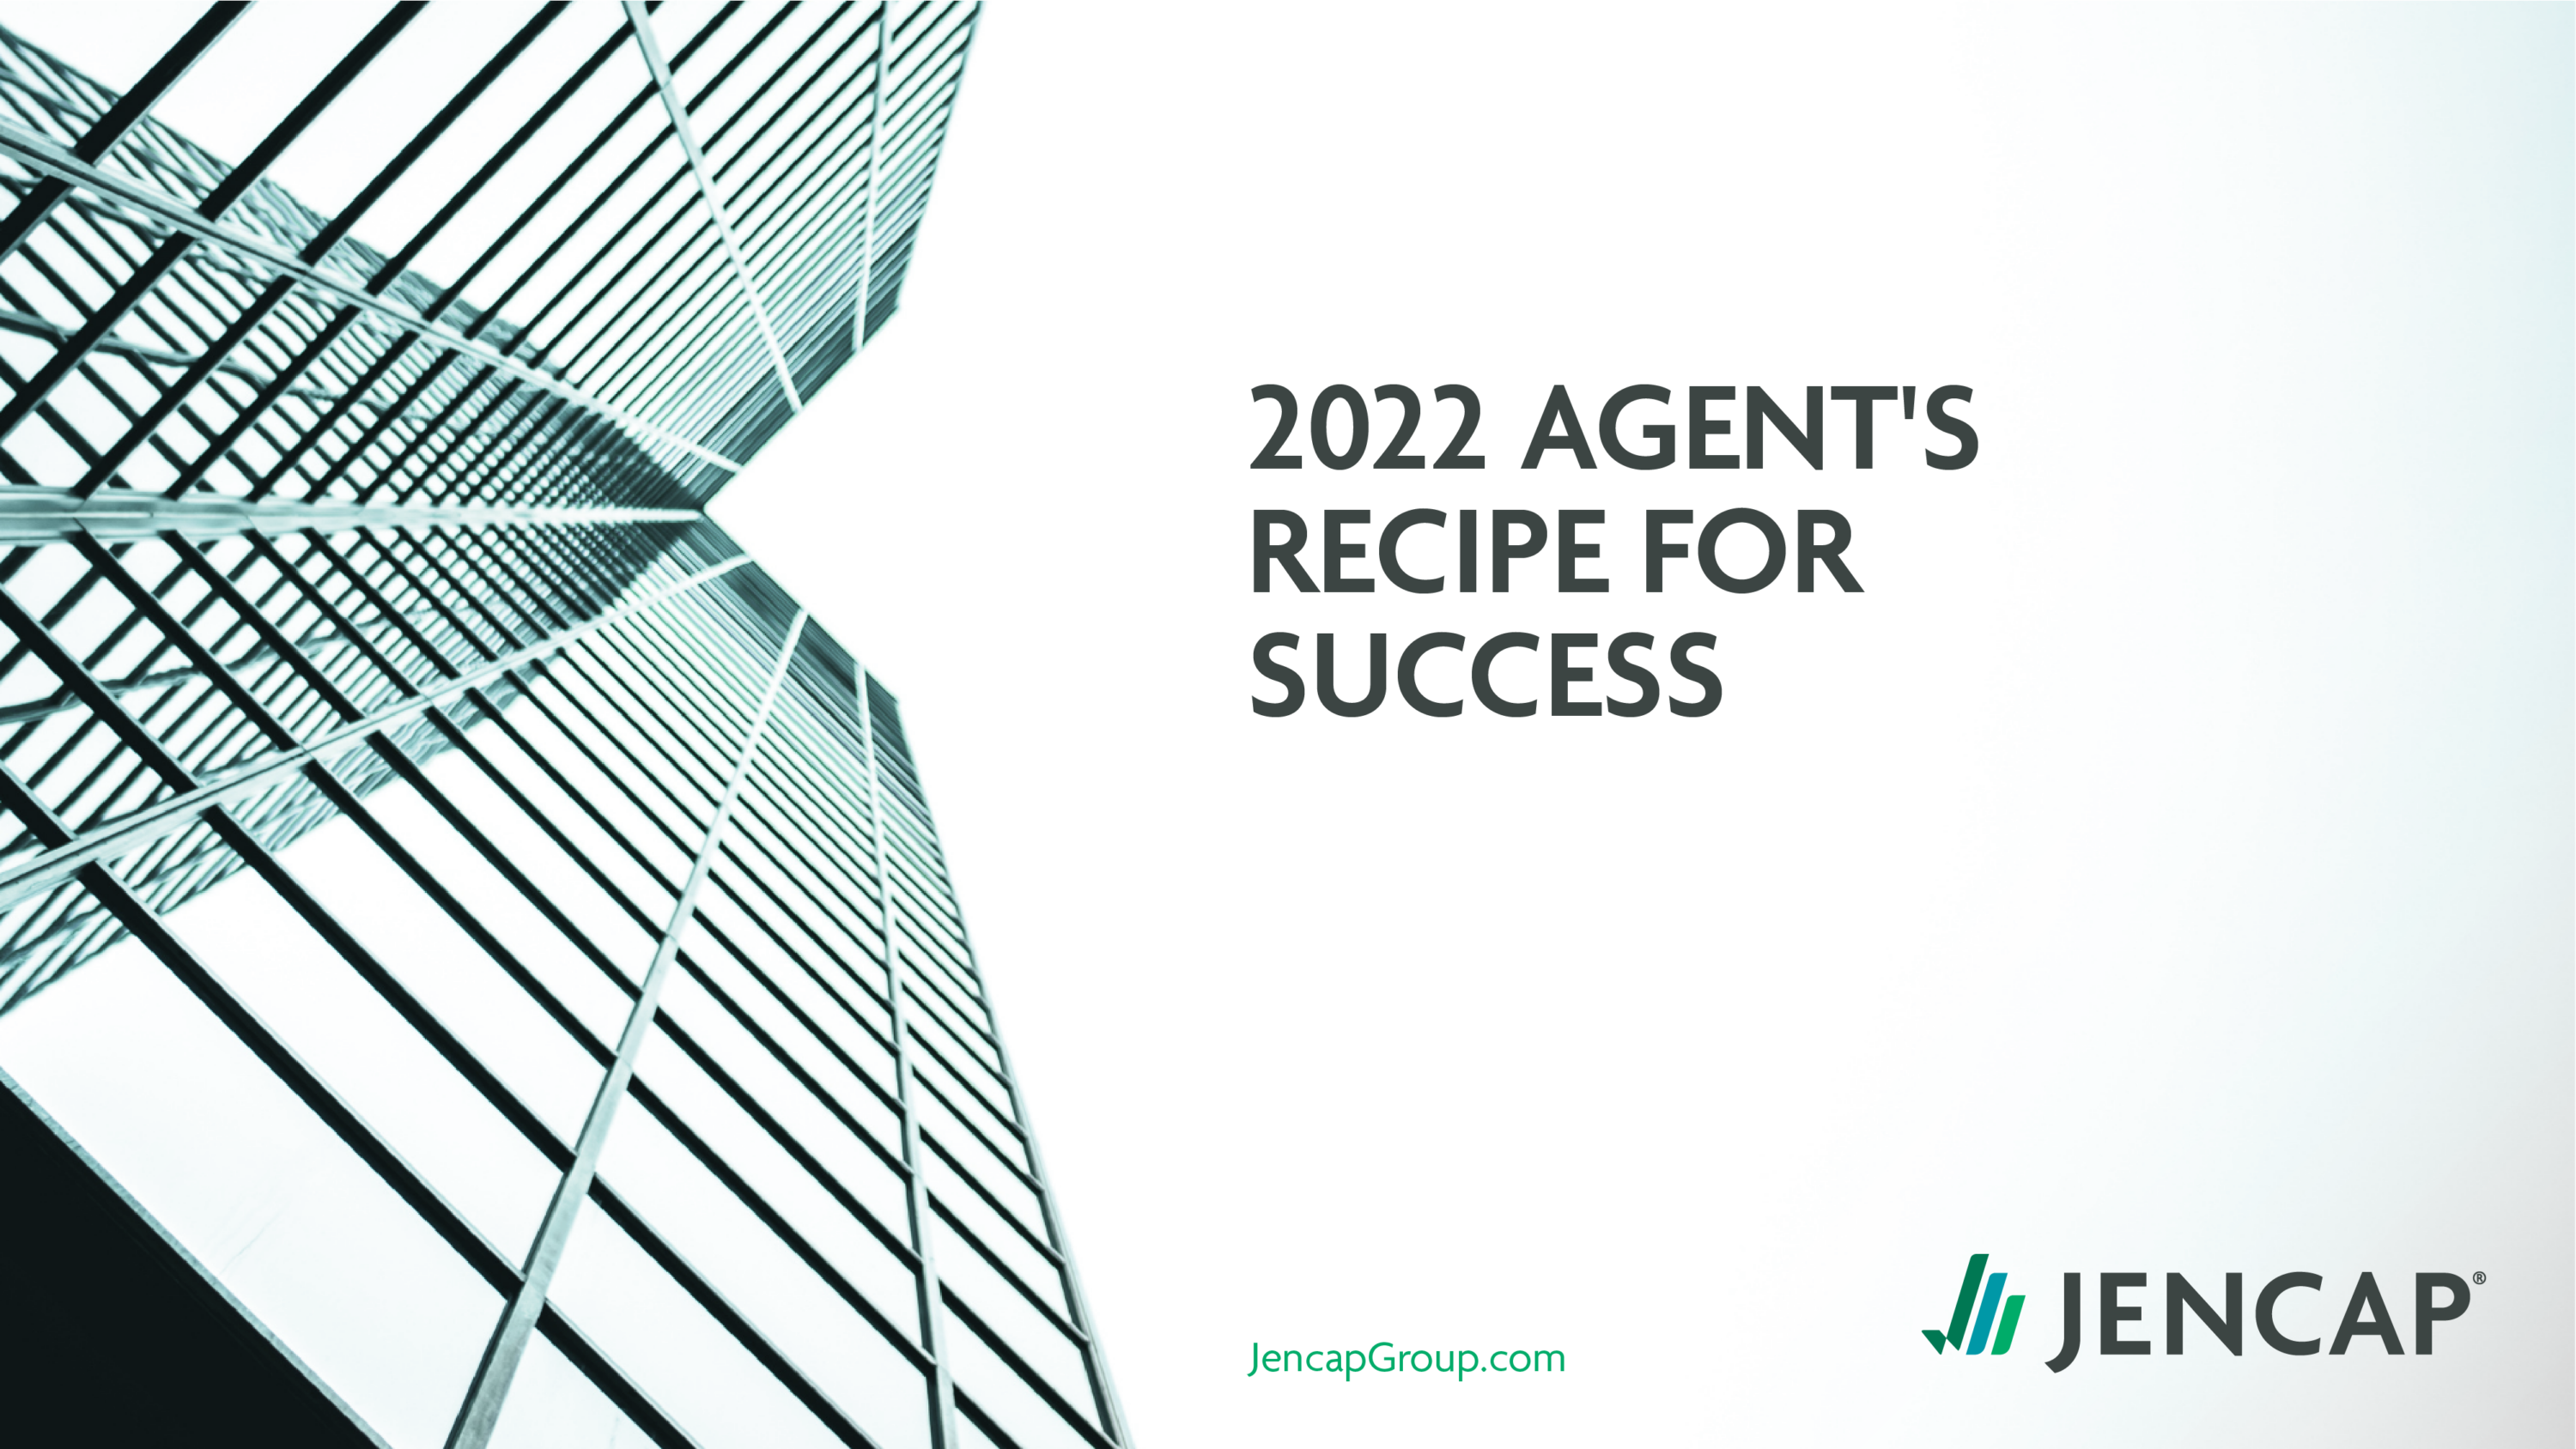 2022 Agent's Recipe for Success